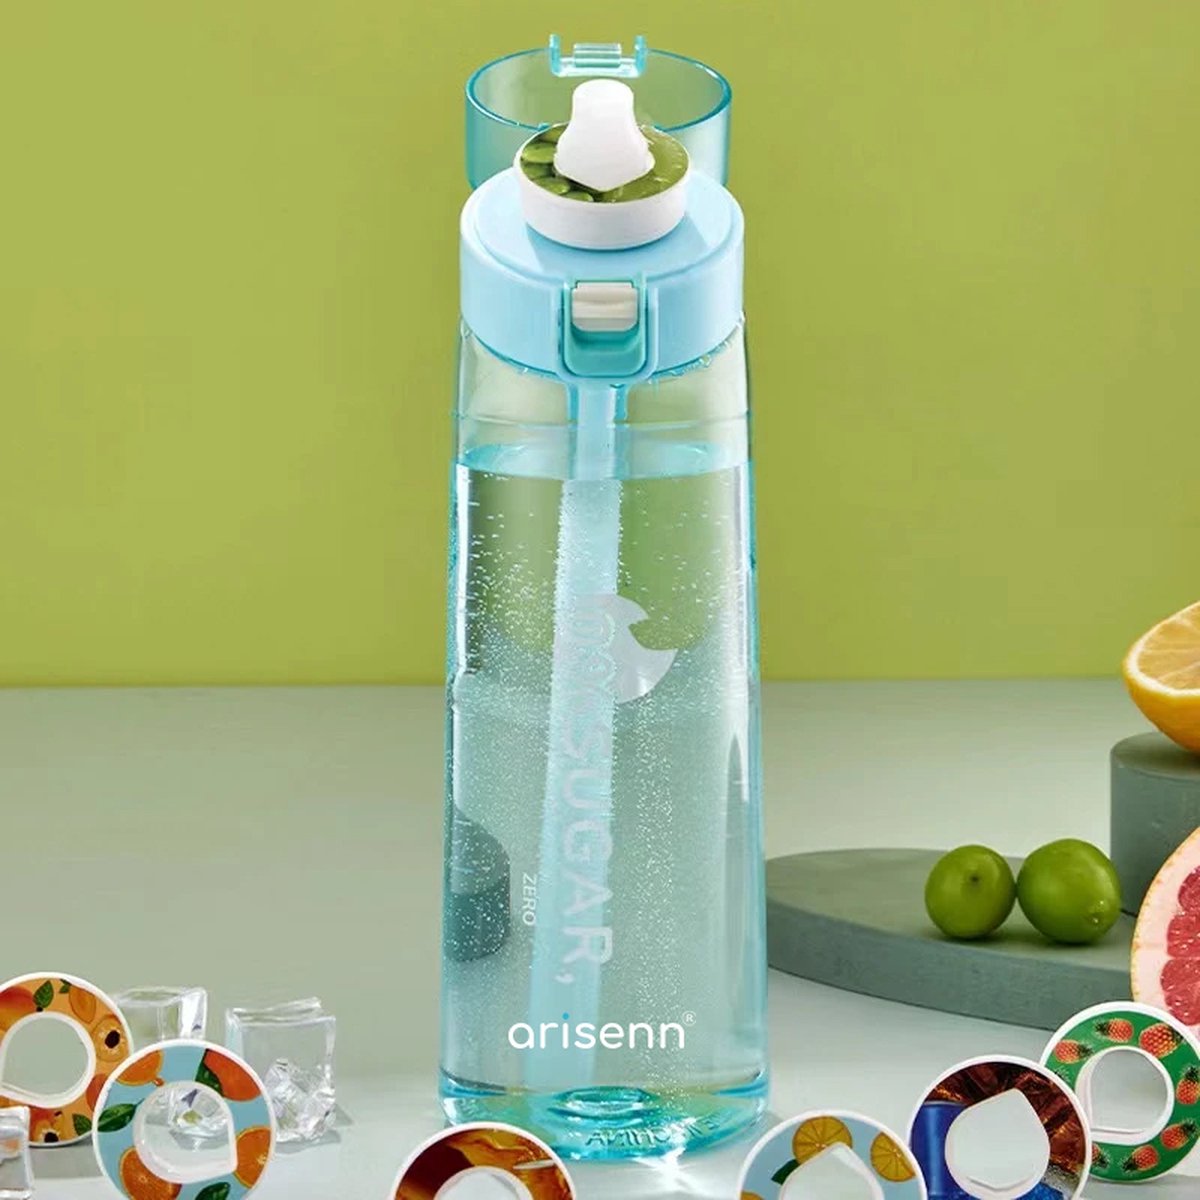 Arisenn® ZERO-fles up - Geur Water up - 100% Smaak, 0% Suiker, 0% Toevoegingen - Gezond & Lekker Drinken - BPA-vrij - Duurzaam - Helpt bij Hydratatie - 5L Smaak per Pod - Air Zuiver Water Up met Geur - Drinkfles 650ml - Blauw